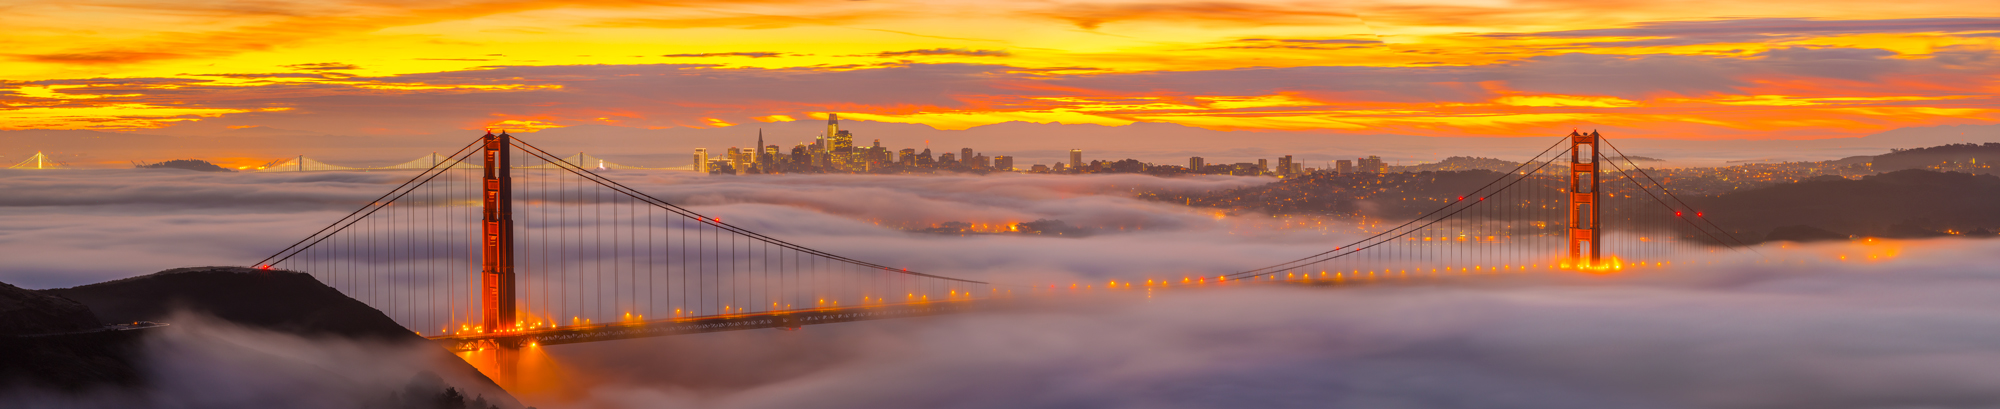 Marin Headlands Golden Gate Bridge San Francisco Bay Area California Fog Sunrise Hawk Hill Fine Art Landscape Photography Mark Lilly Panorama